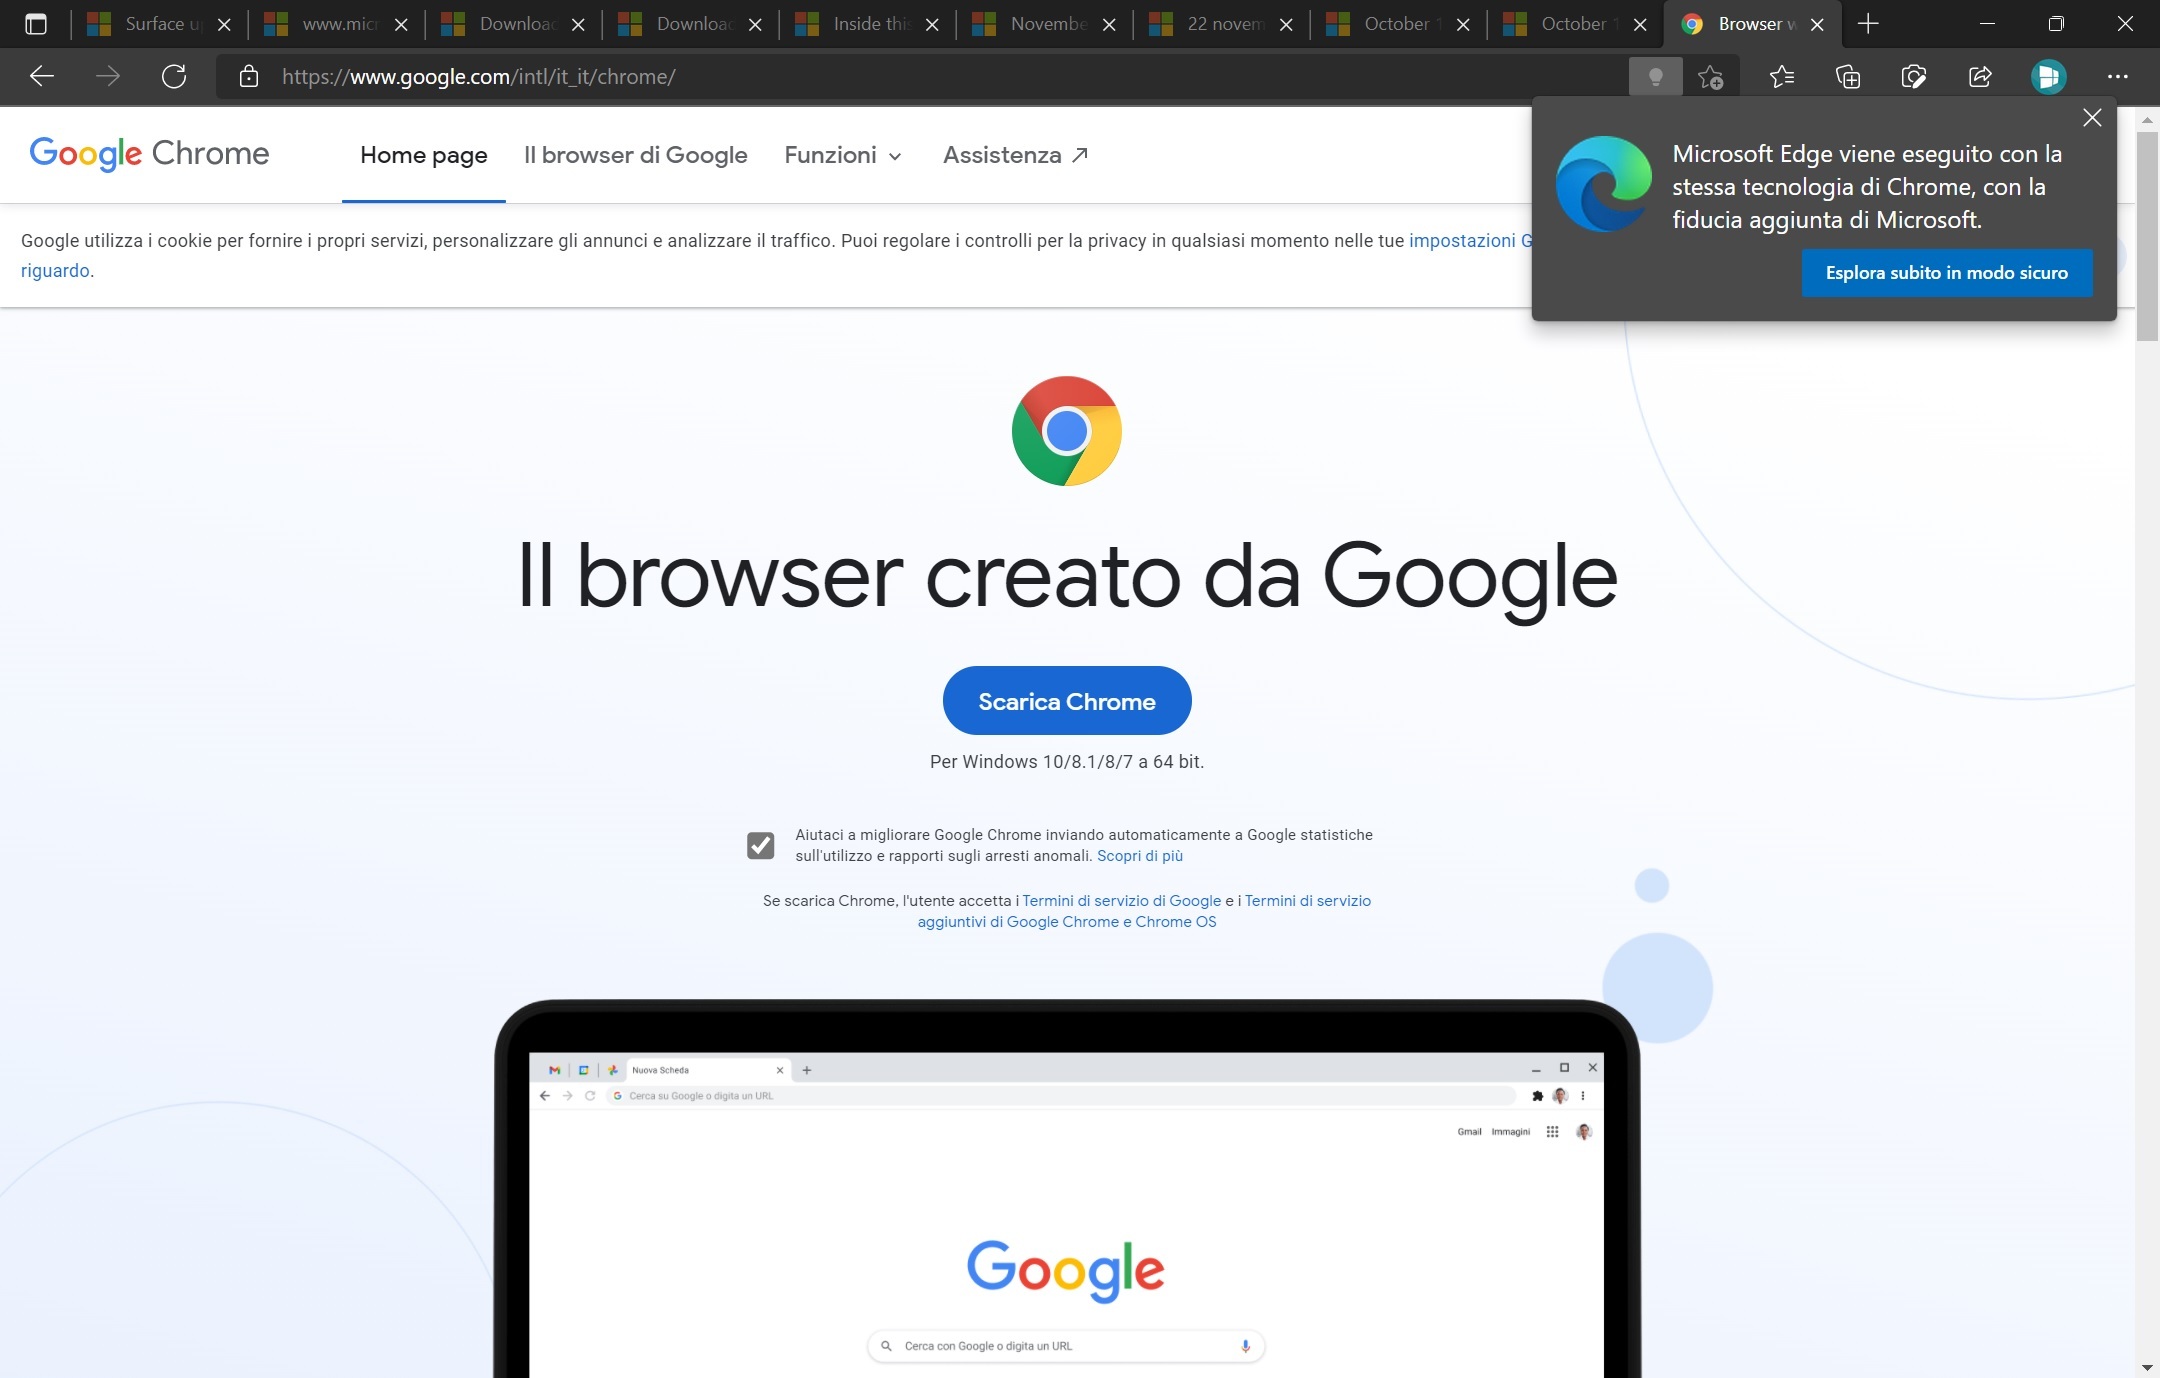 Microsoft Edge - Suggerimenti nella pagina di download di Chrome